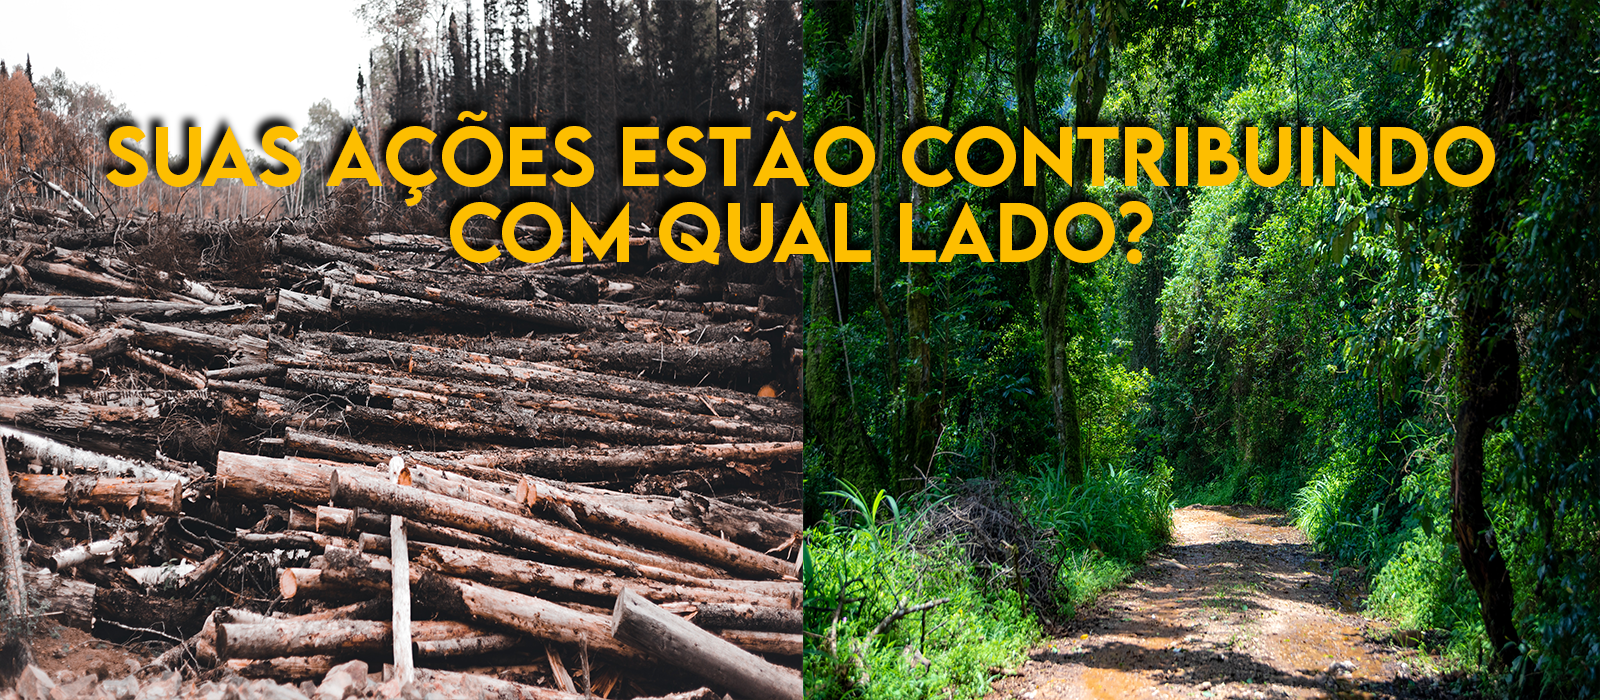 Marca Verde 100% Digital, Produtos Digital e Sustentáveis, Amigos da Floresta, Sustentabilidade, Cadernos & Planner Digital Brasil